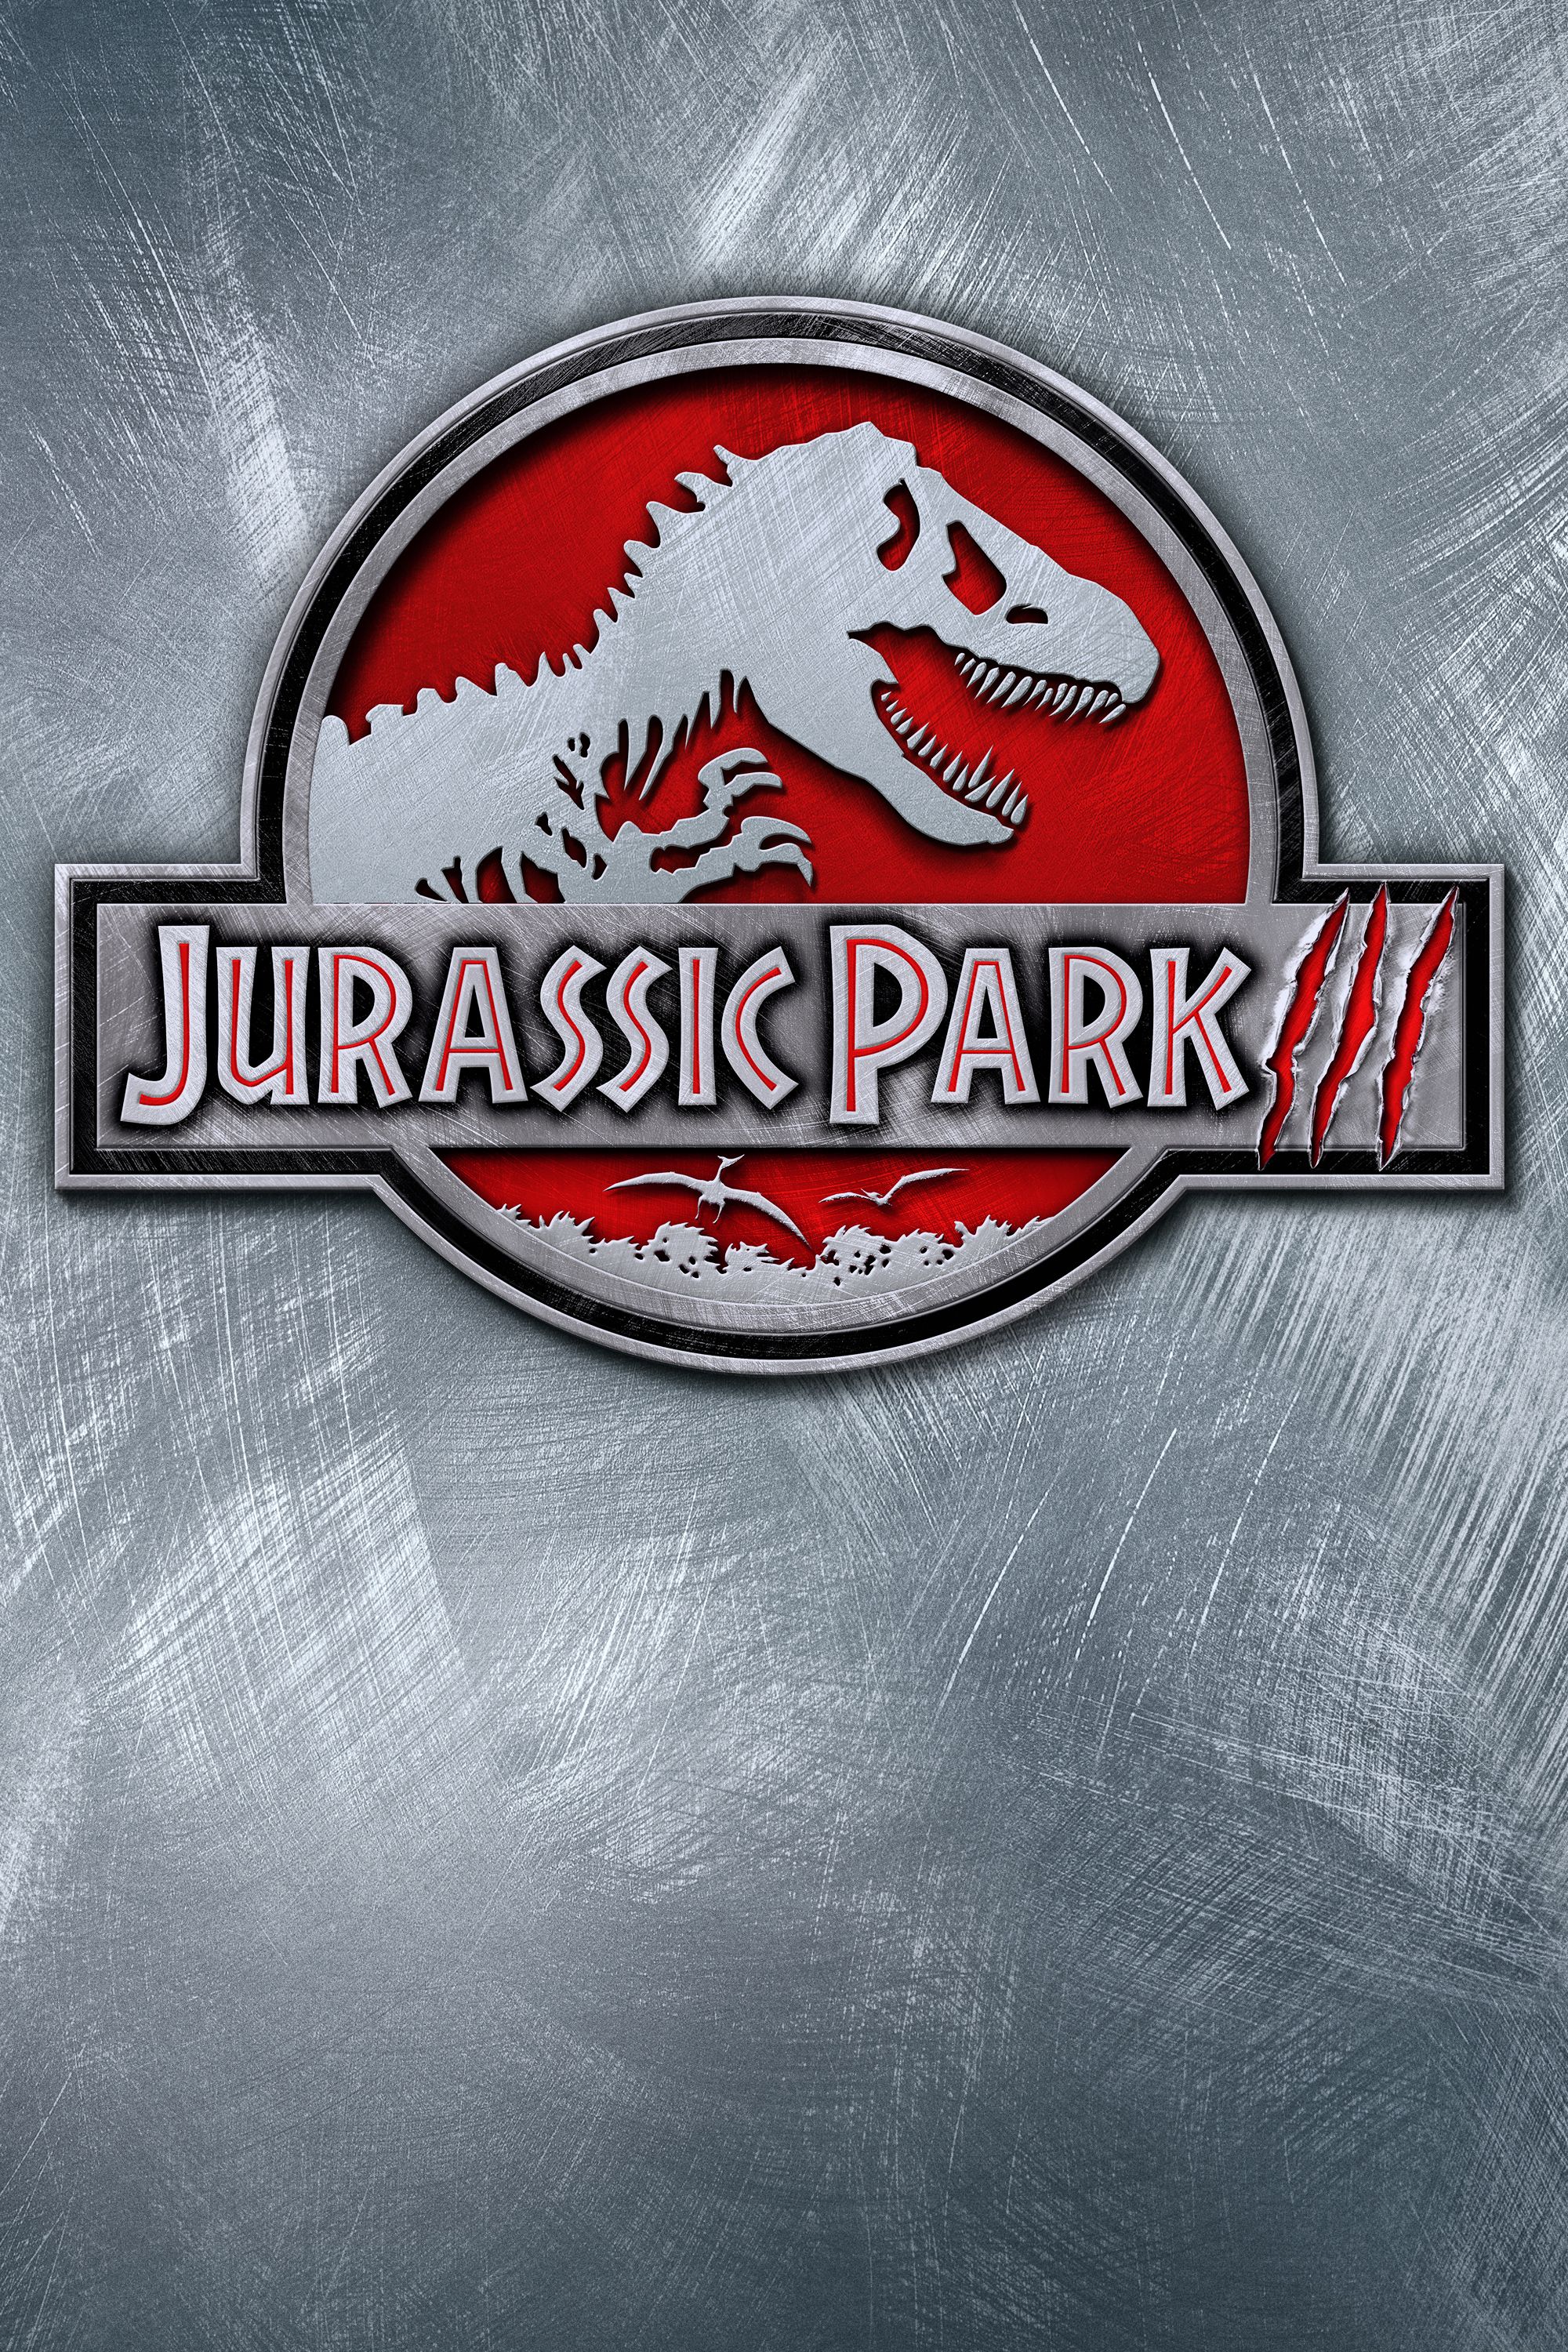 Jurassic park 3 online for free